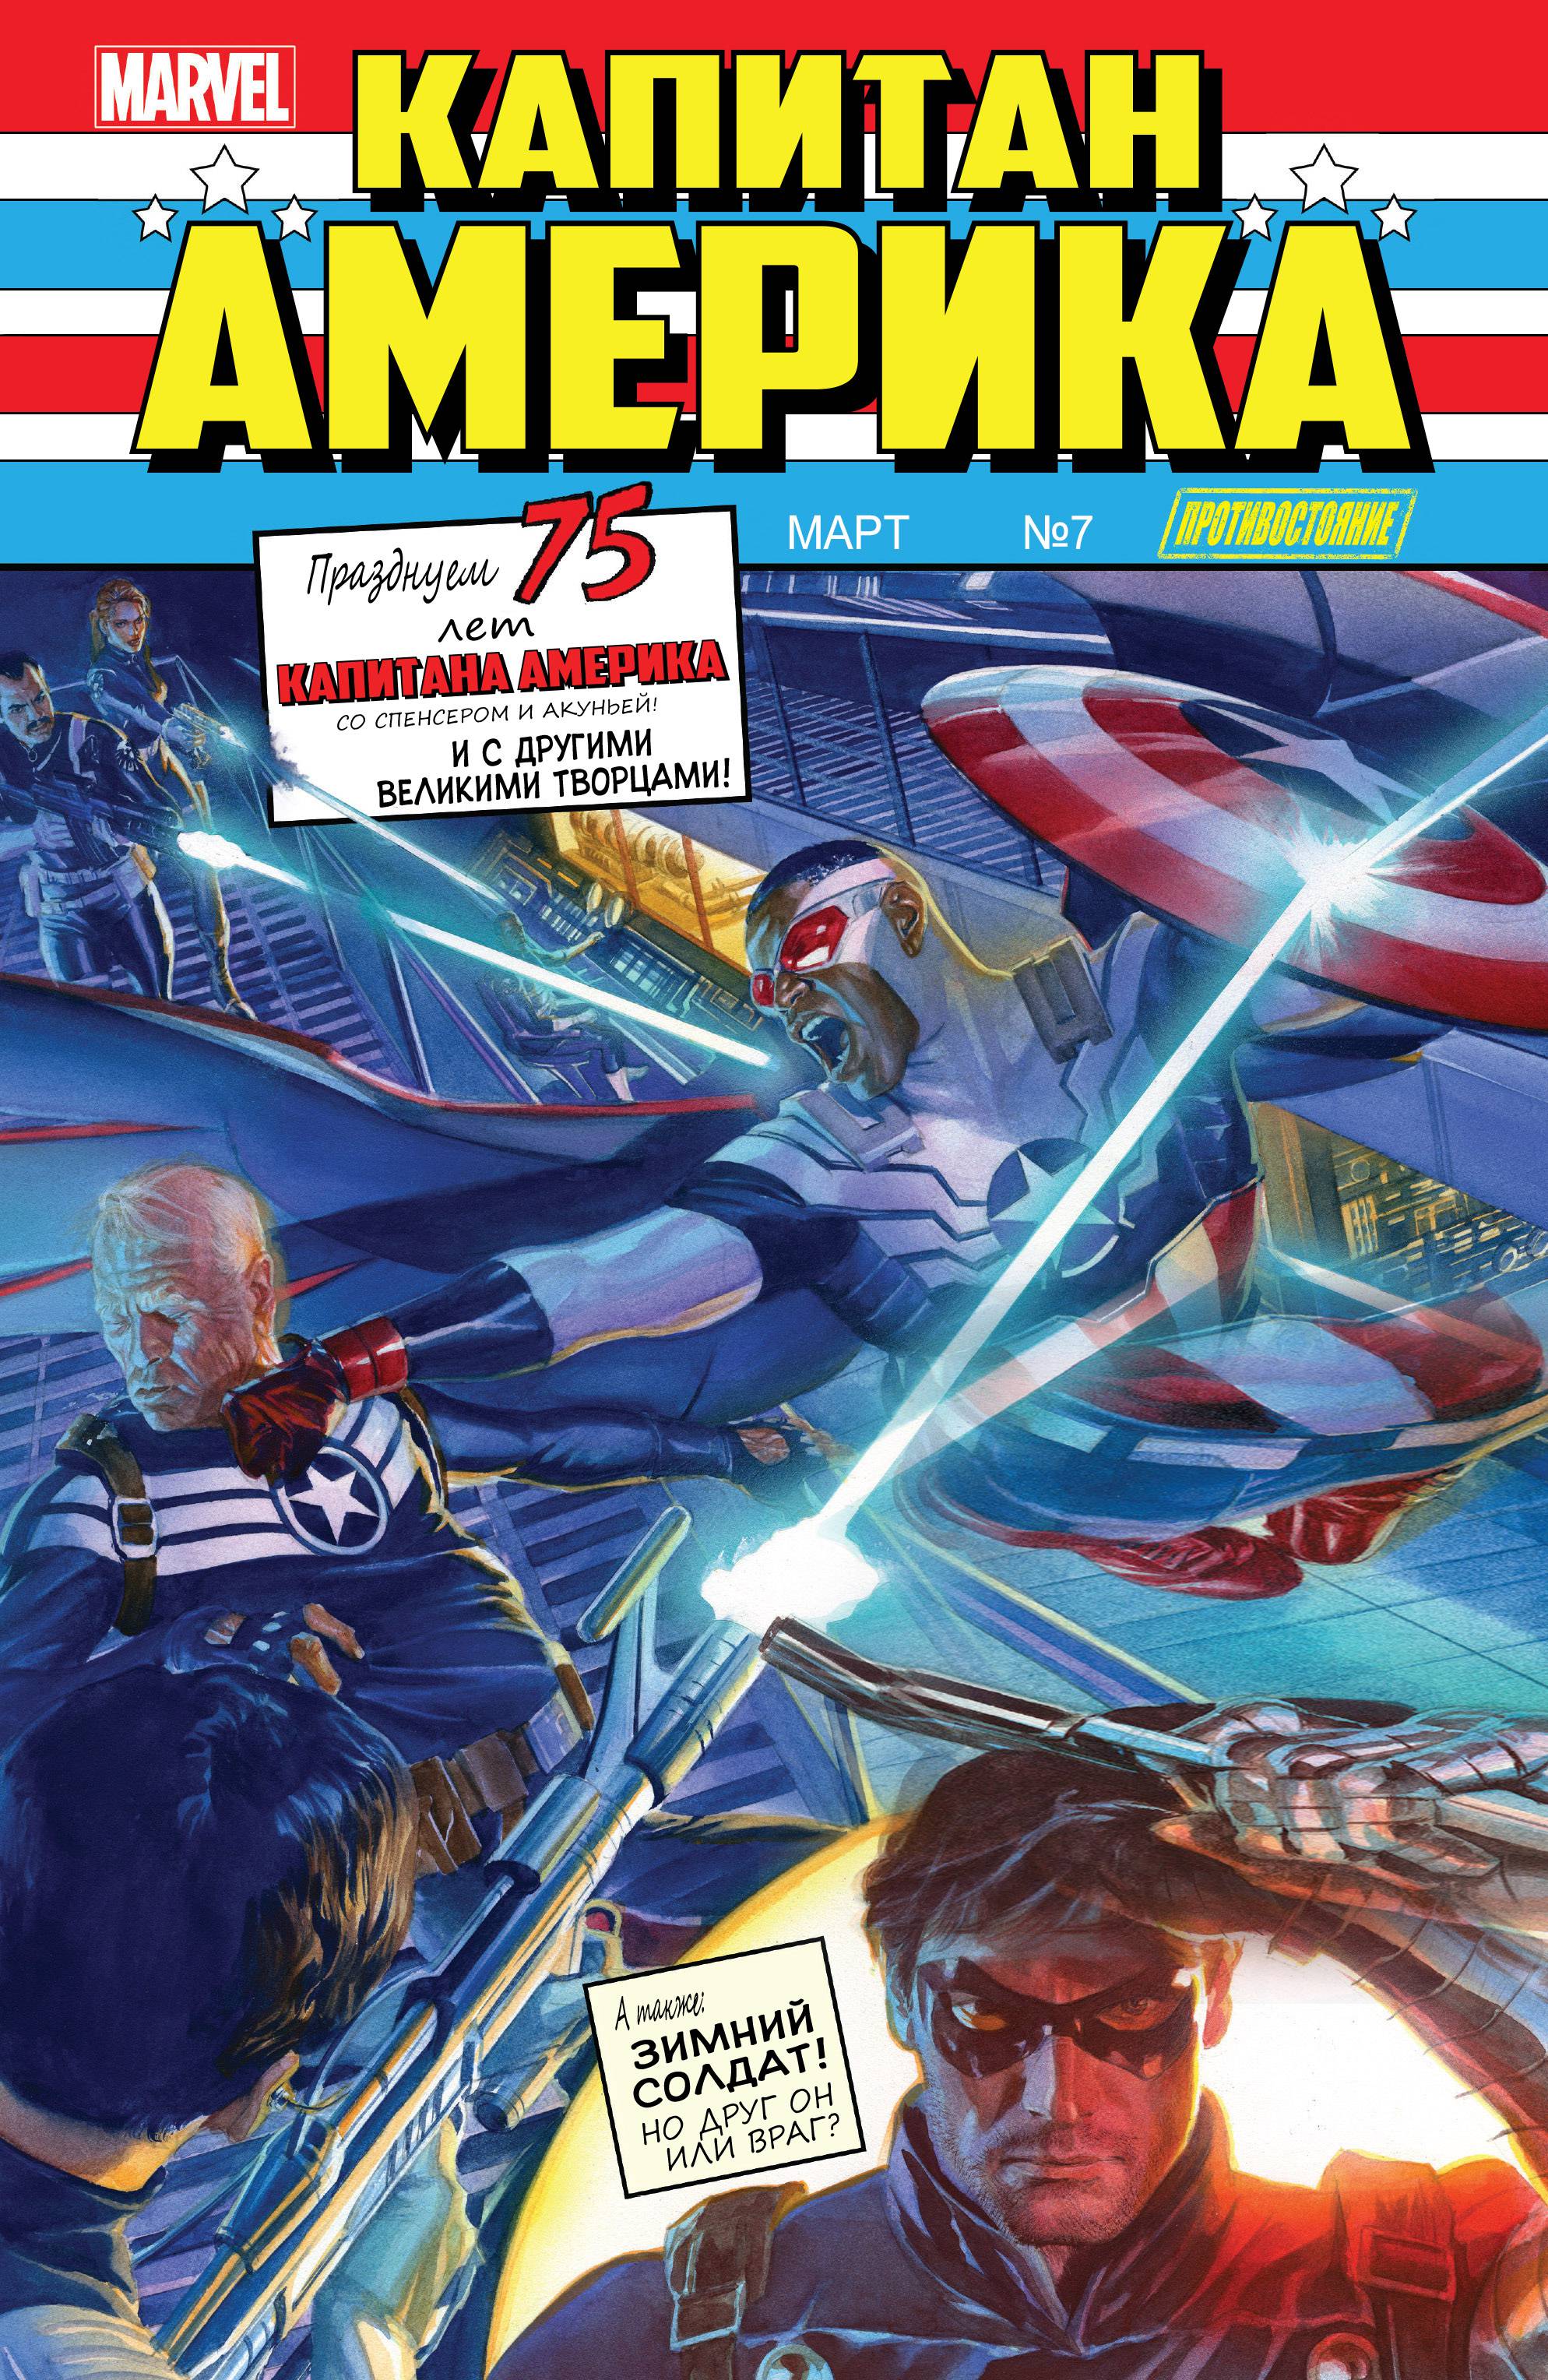 Капитан Америка: Сэм Уилсон №7 онлайн